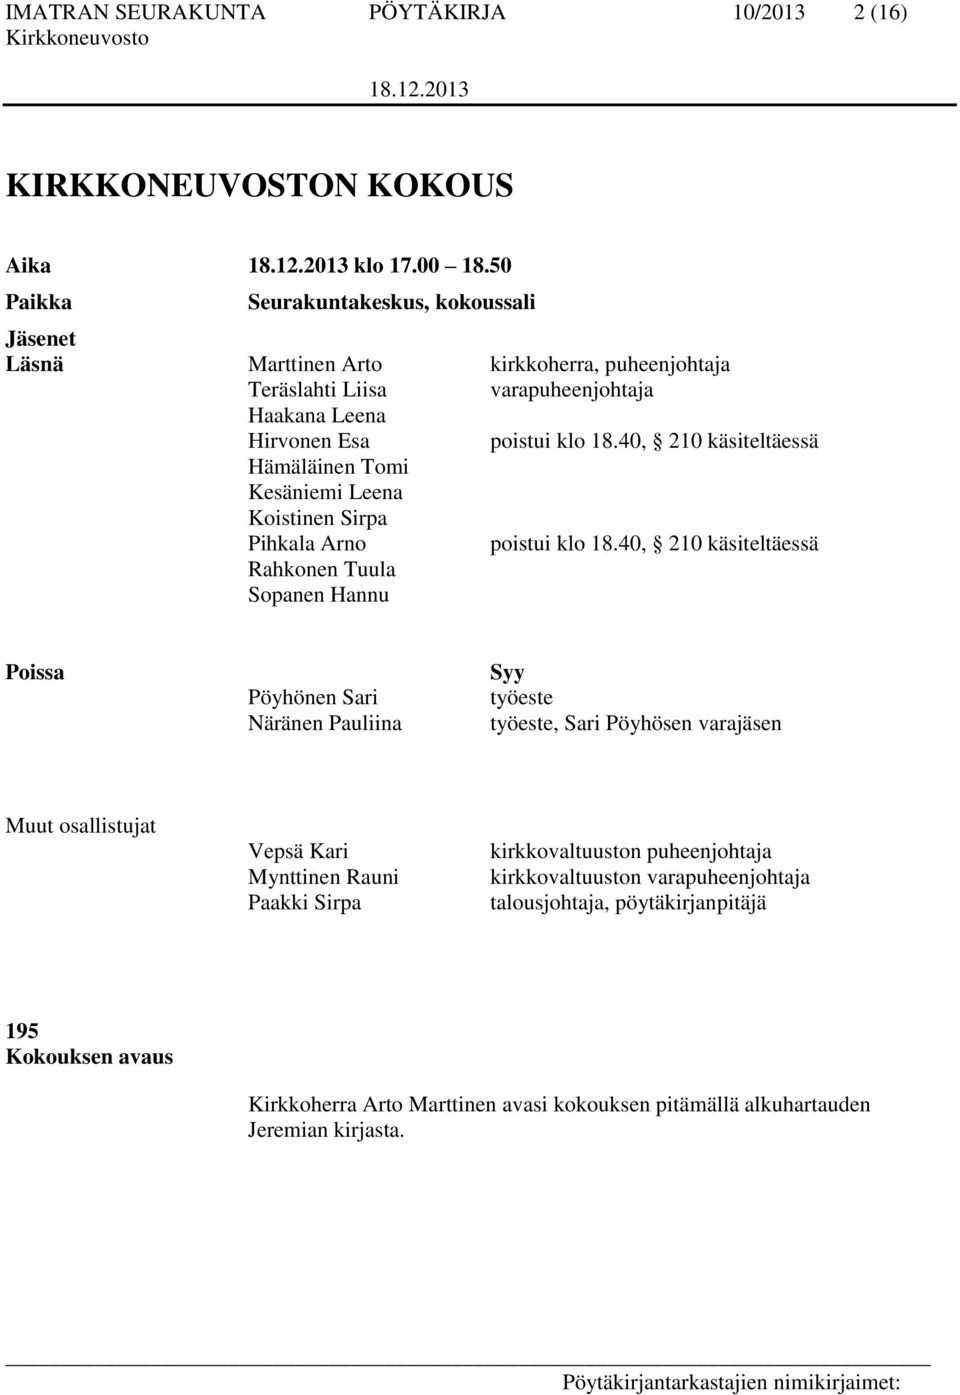 40, 210 käsiteltäessä Hämäläinen Tomi Kesäniemi Leena Koistinen Sirpa Pihkala Arno poistui klo 18.